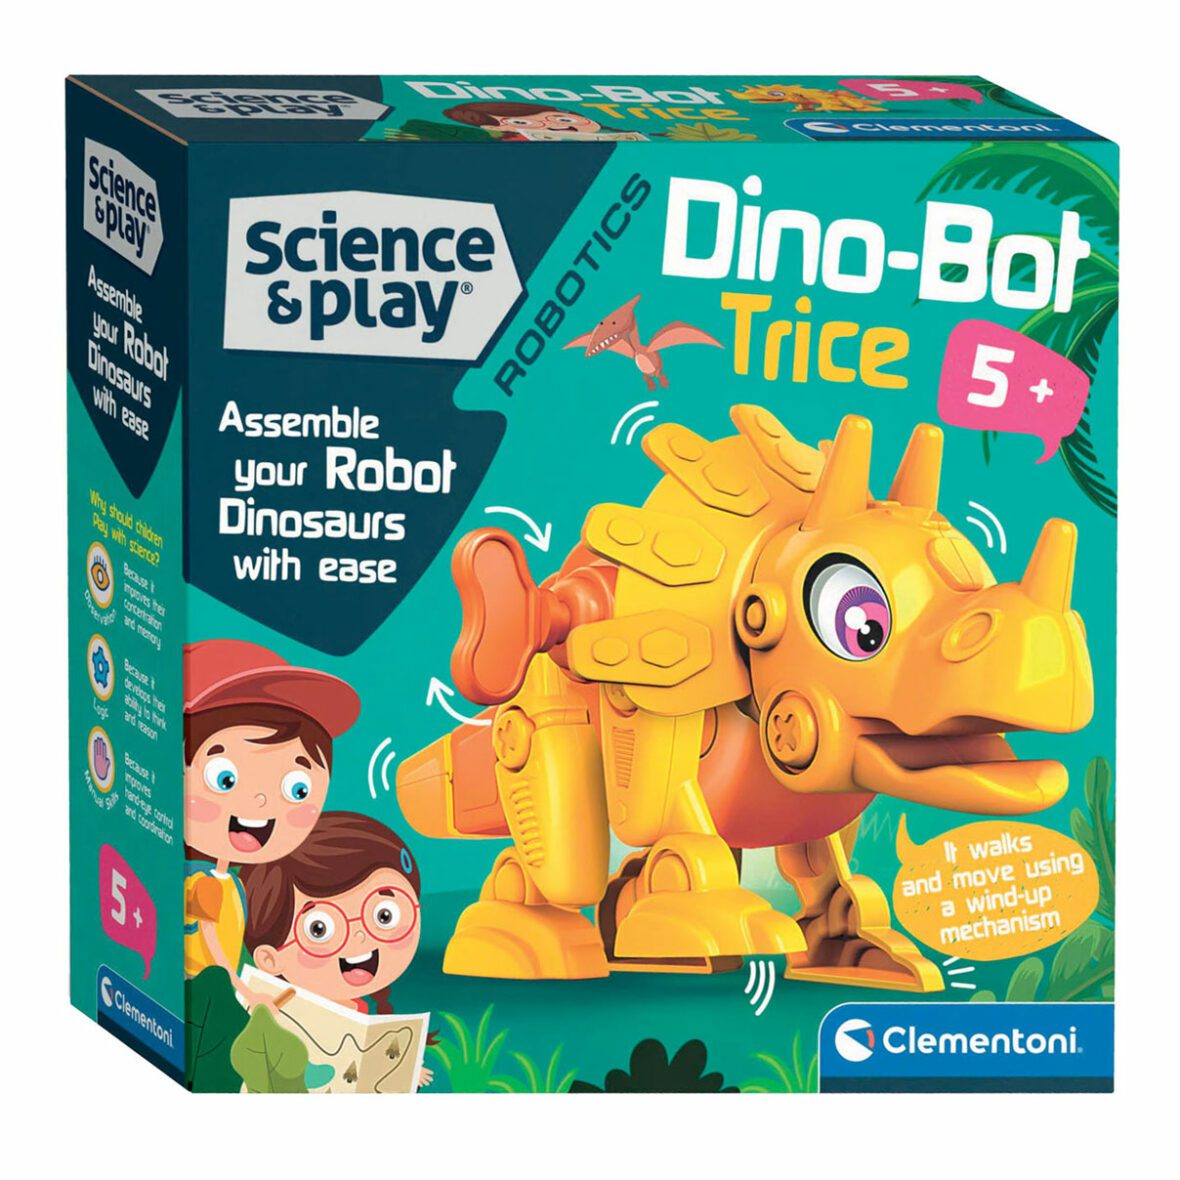 Dino Bot Triceratops – Clementoni